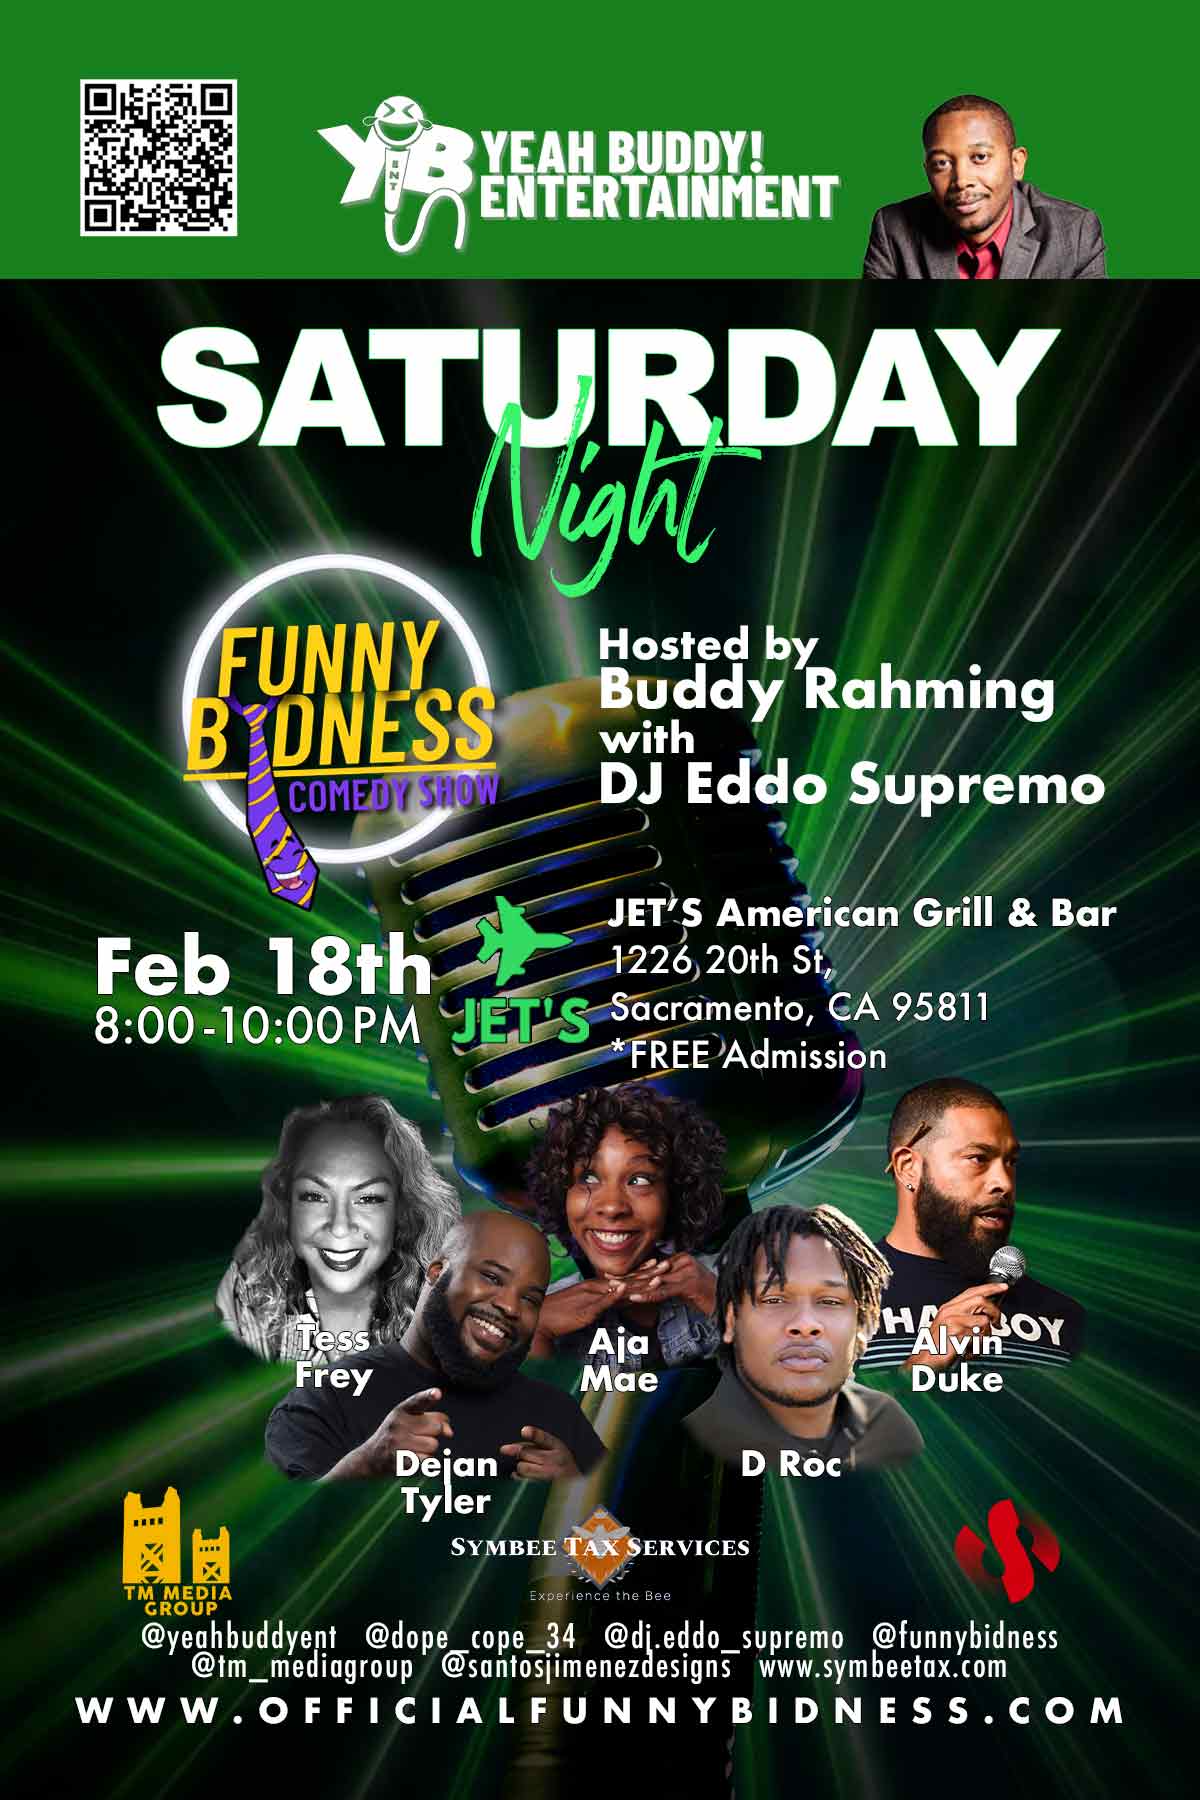 Saturday Night: Funny Bidness Comedy Show – Feb 18th